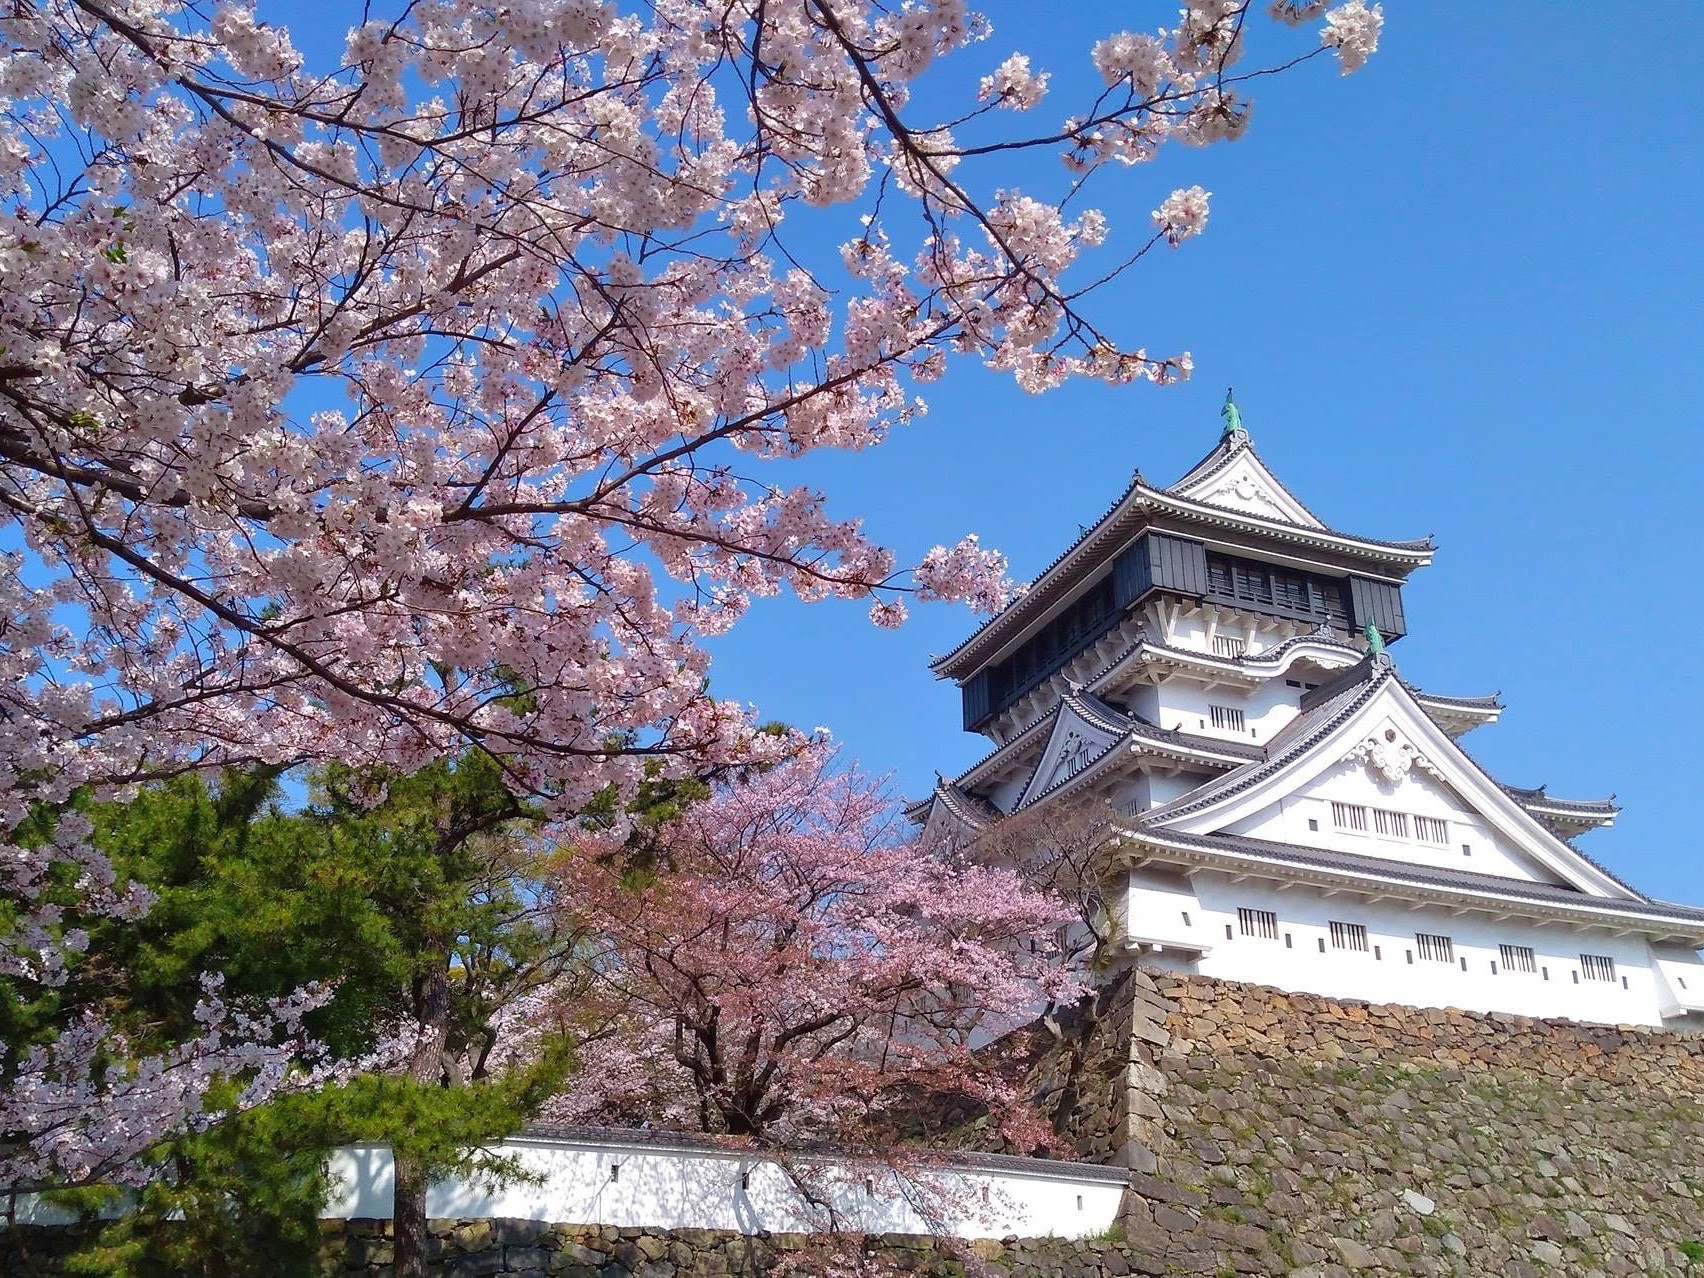 【福岡】小倉城 日本全国にある、城と桜が一緒に見られる名所